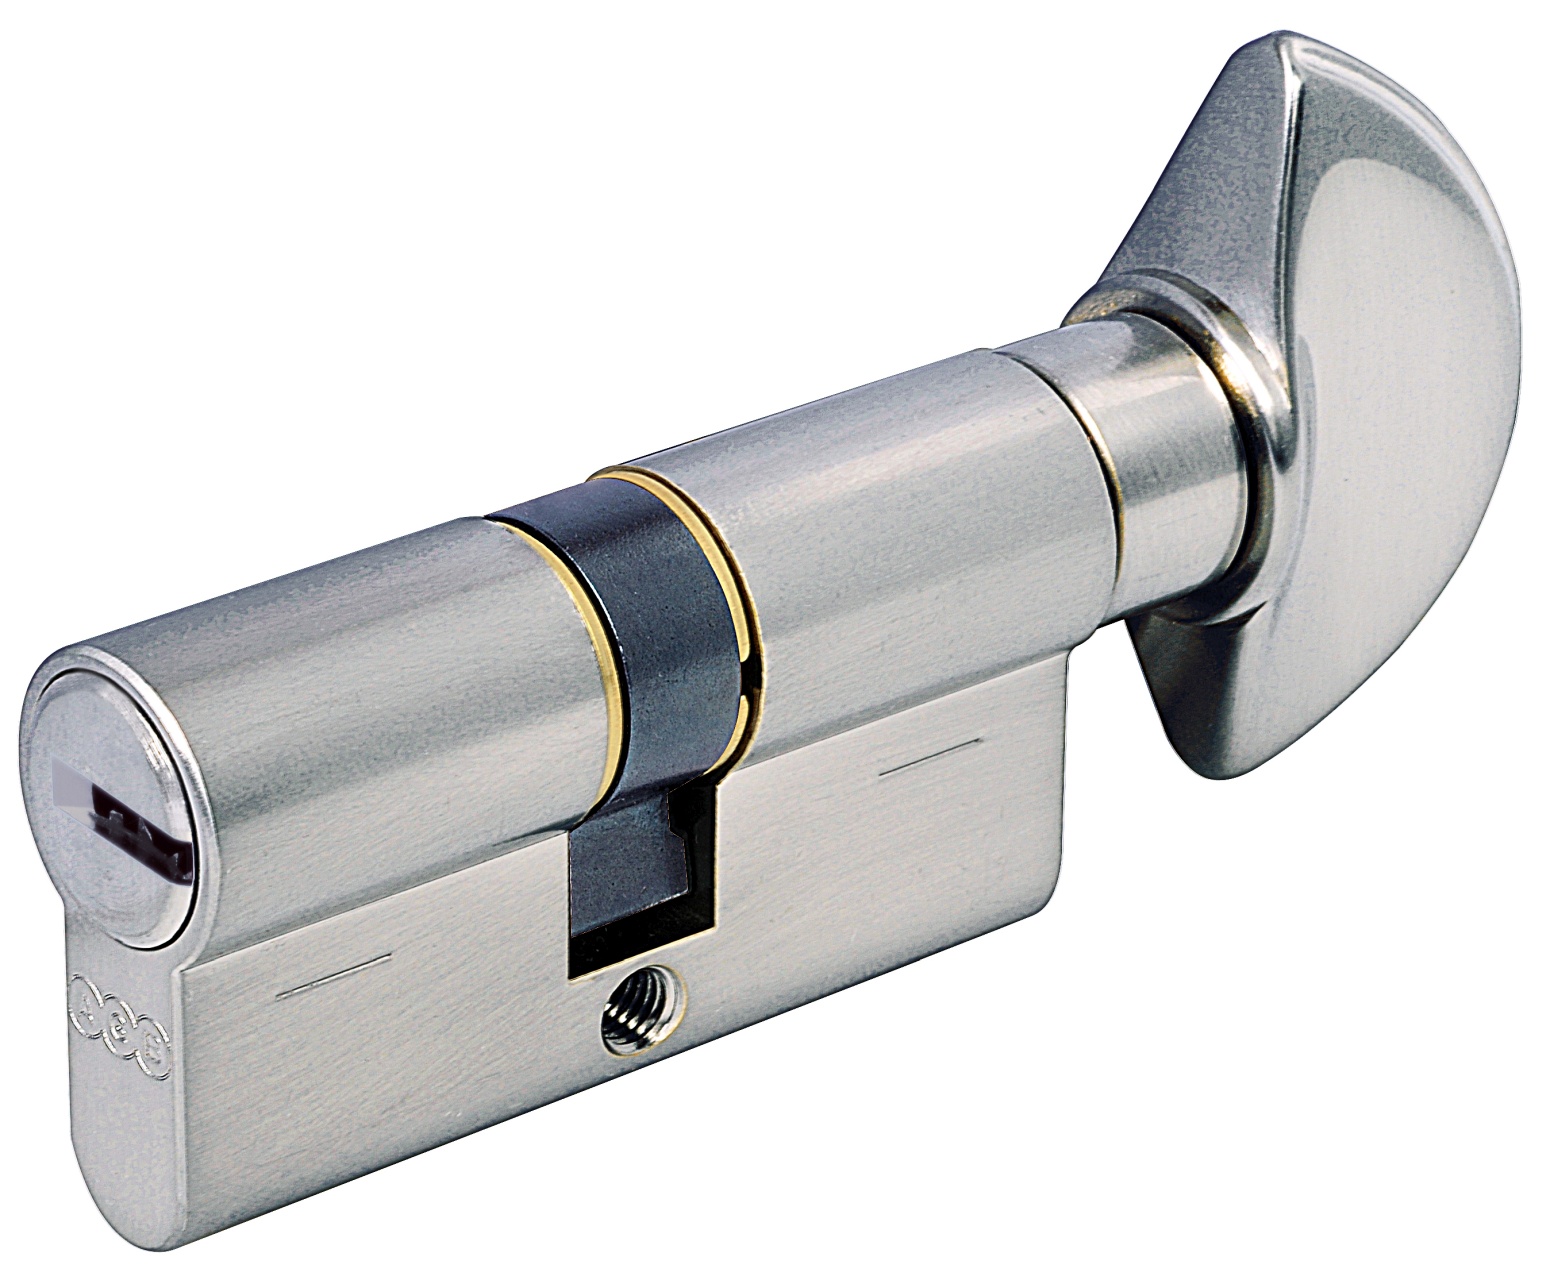 AGB -  Cilindro SCUDO 5000 PS frizionato anti bamping con chiave e pomolo - col. LUCIDO VERNICIATO - lunghezza 105 - misura P-40-10-55